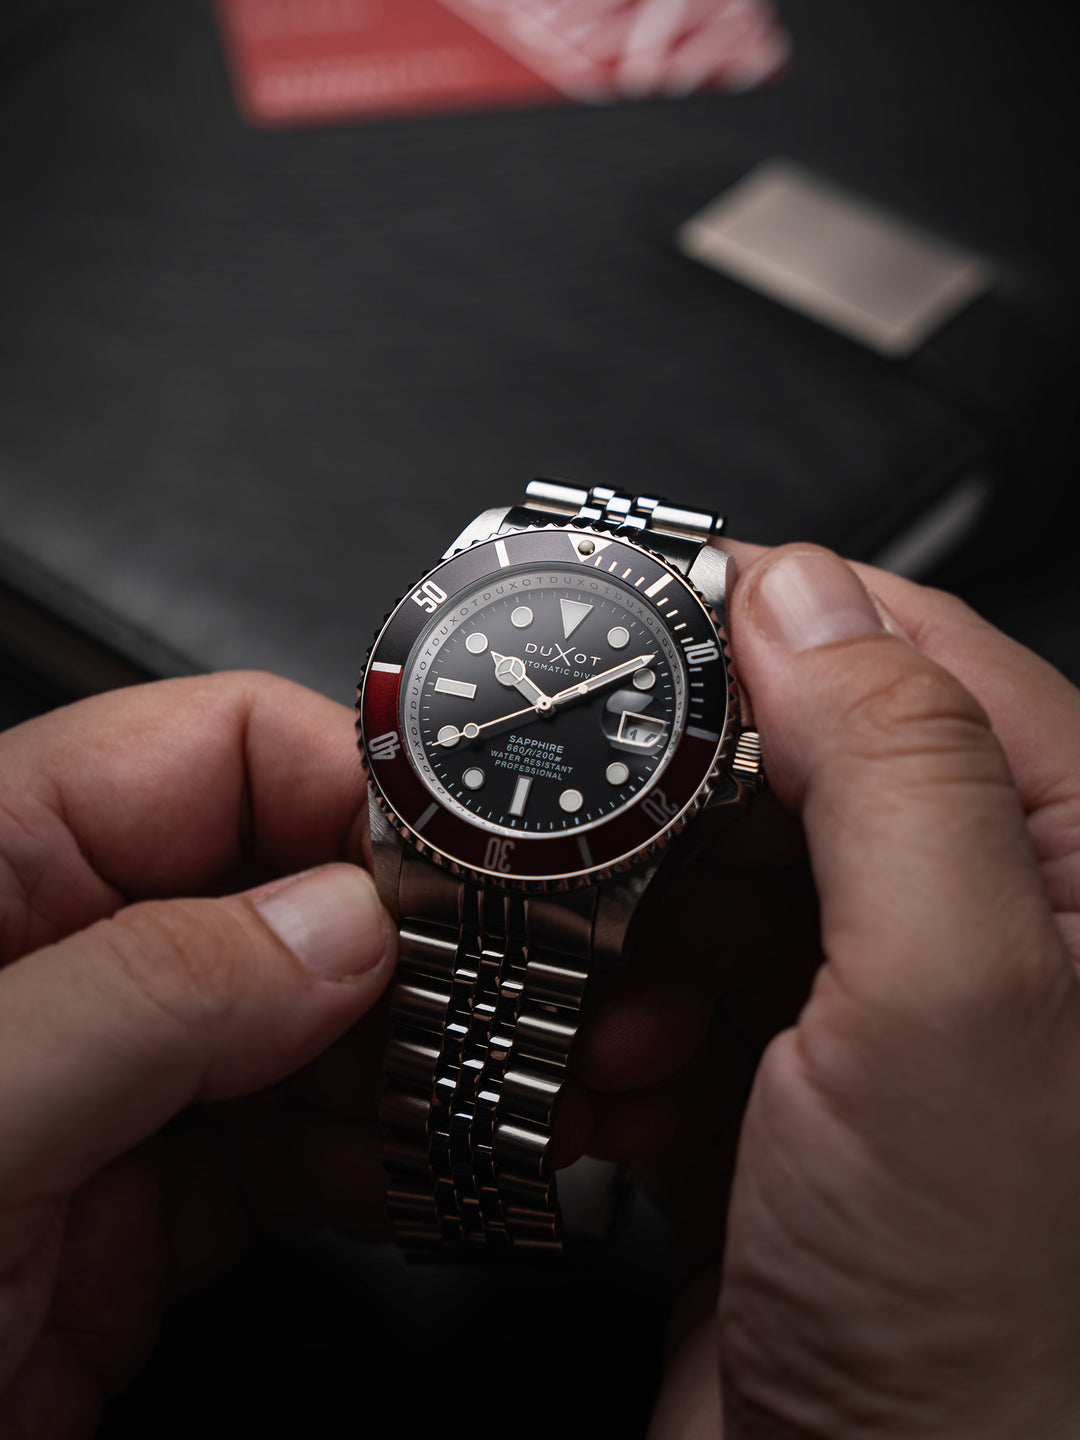 Duxot Atlantica Diver Automatic 24 Jewels Men's Watch -  DX-2057-88